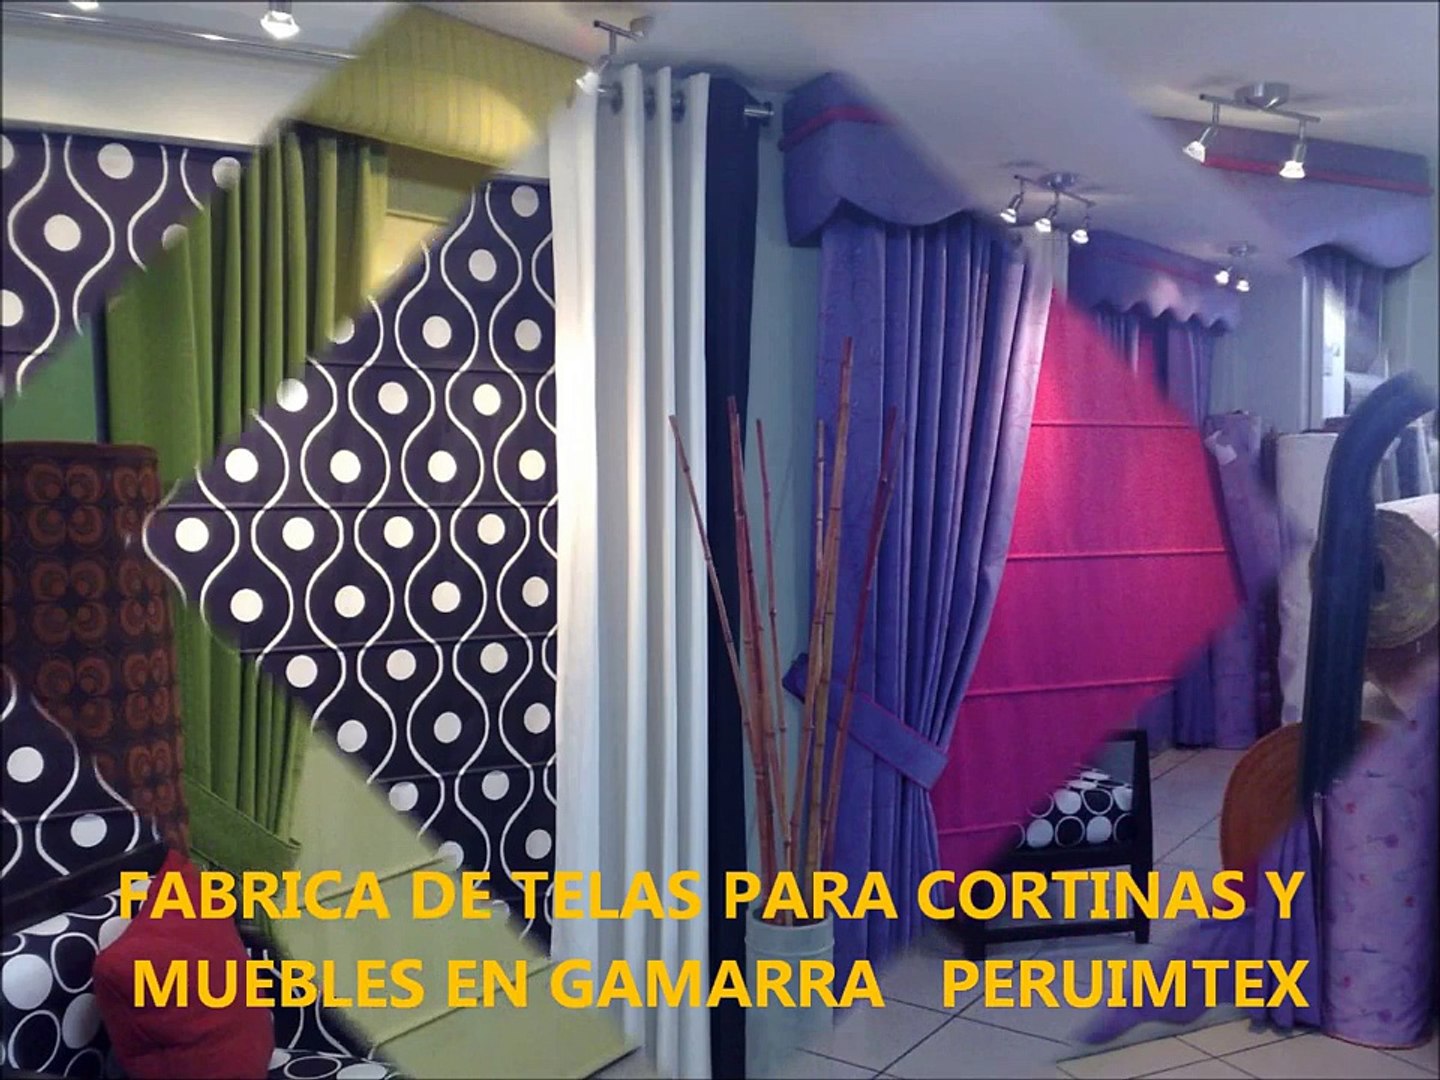 FABRICA DE TELAS PARA CORTINAS Y MUEBLES EN GAMARRA PERUIMTEX - video  Dailymotion